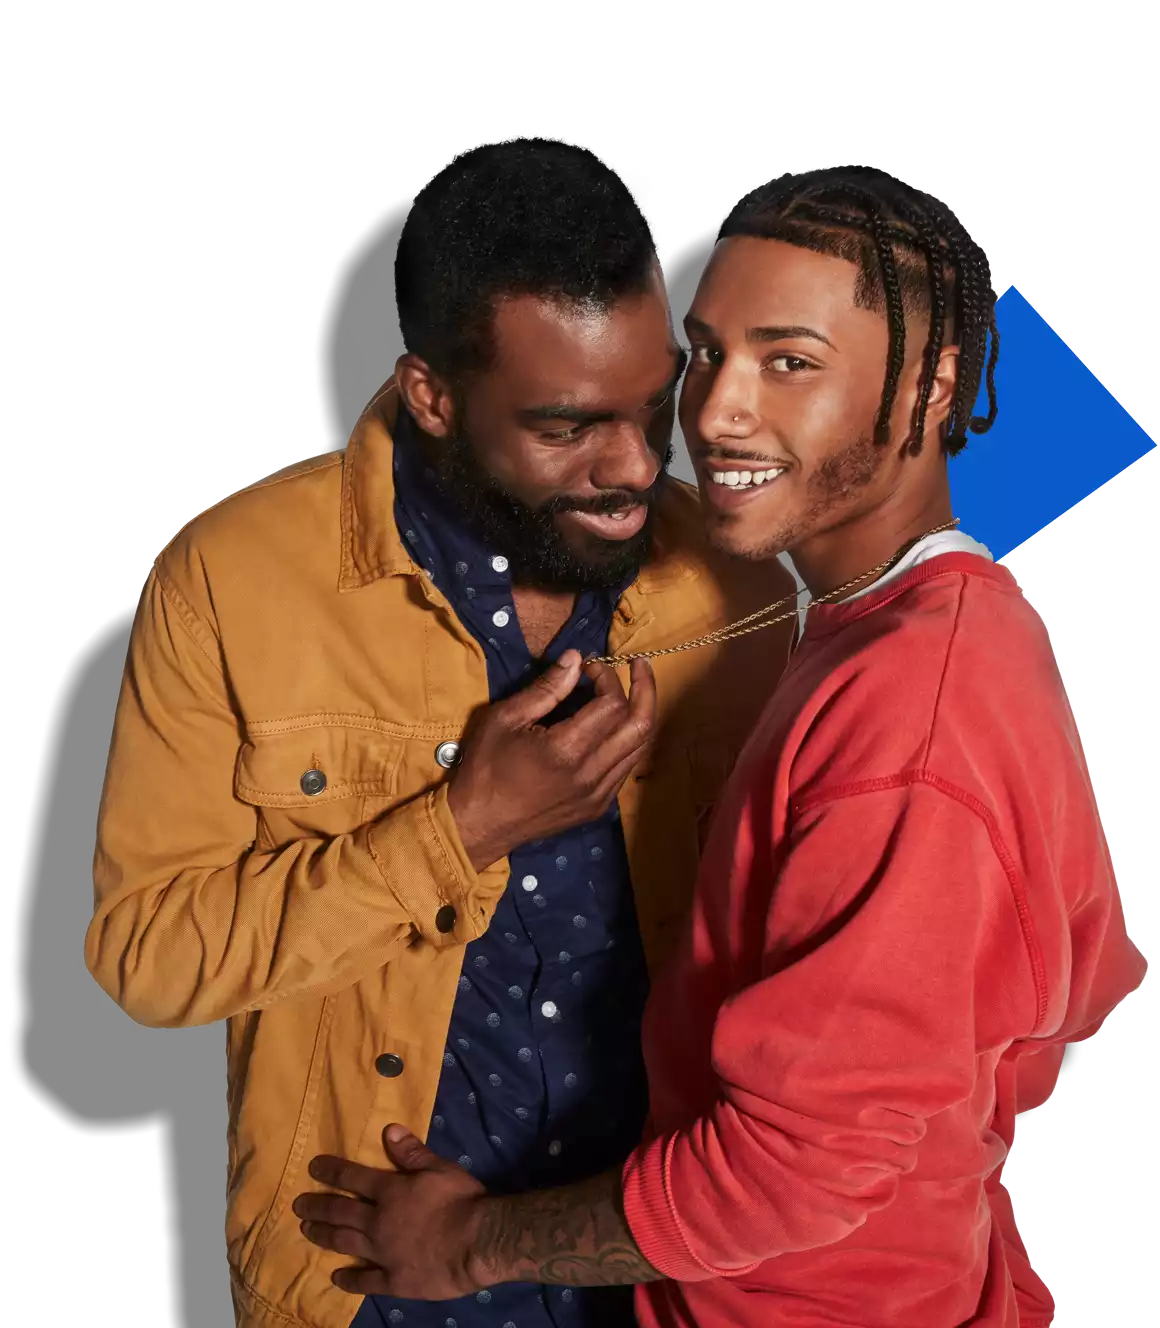 dos gays abrazados íntimamente y sonriendo